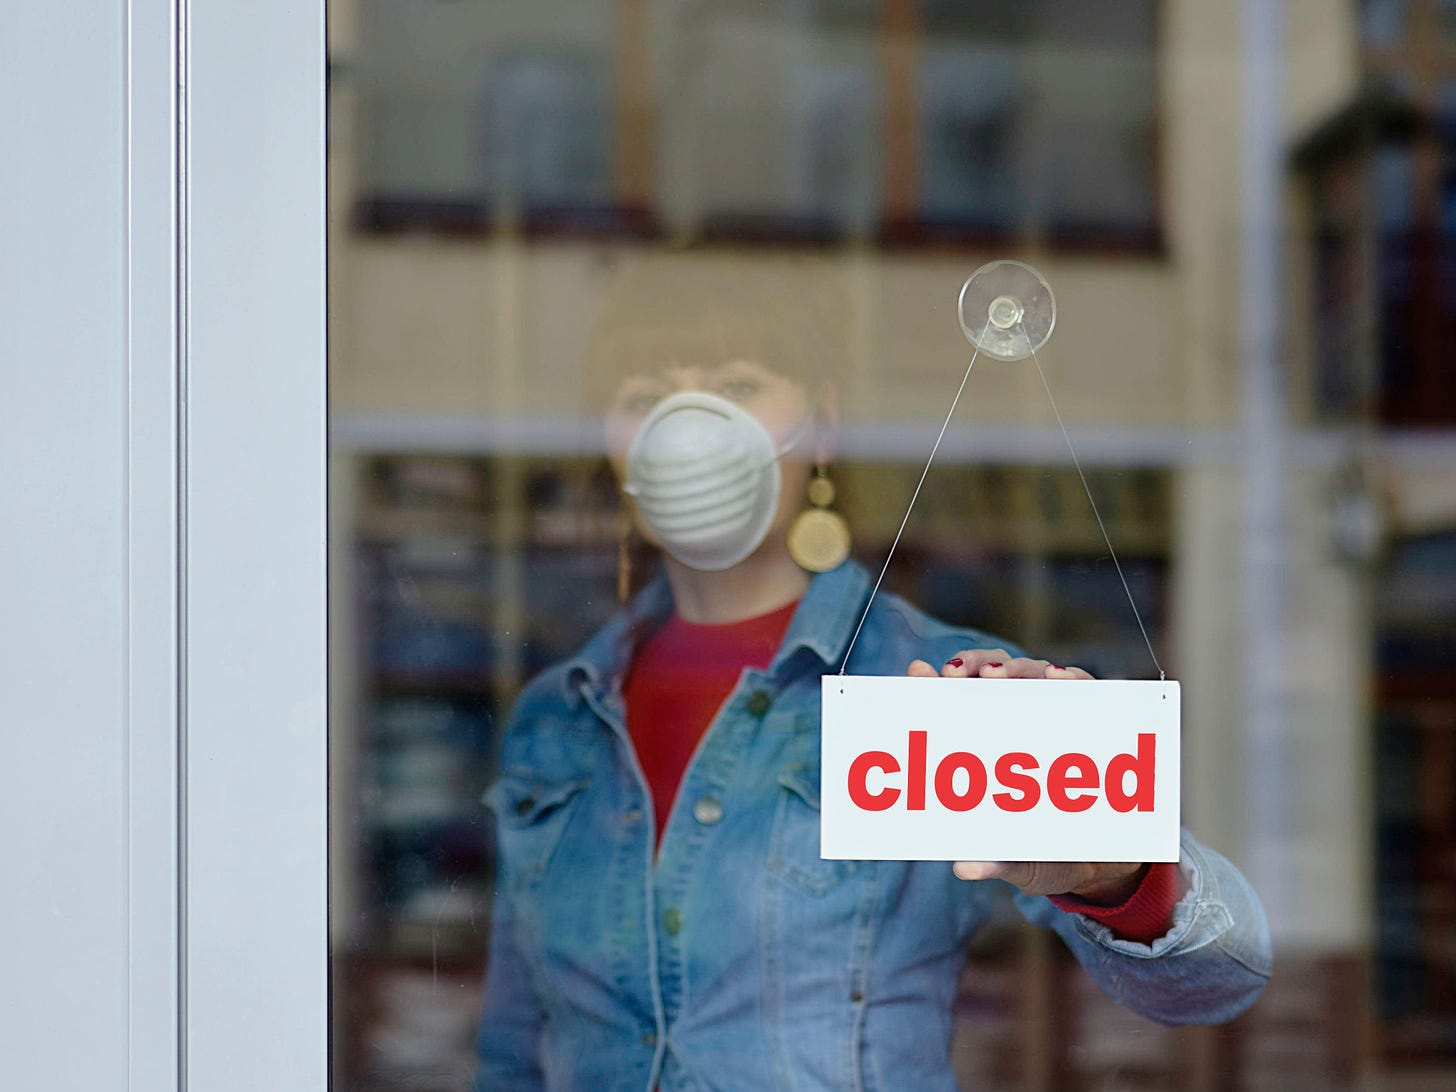 Seorang wanita pemilik toko menutup toko sambil mengenakan masker.